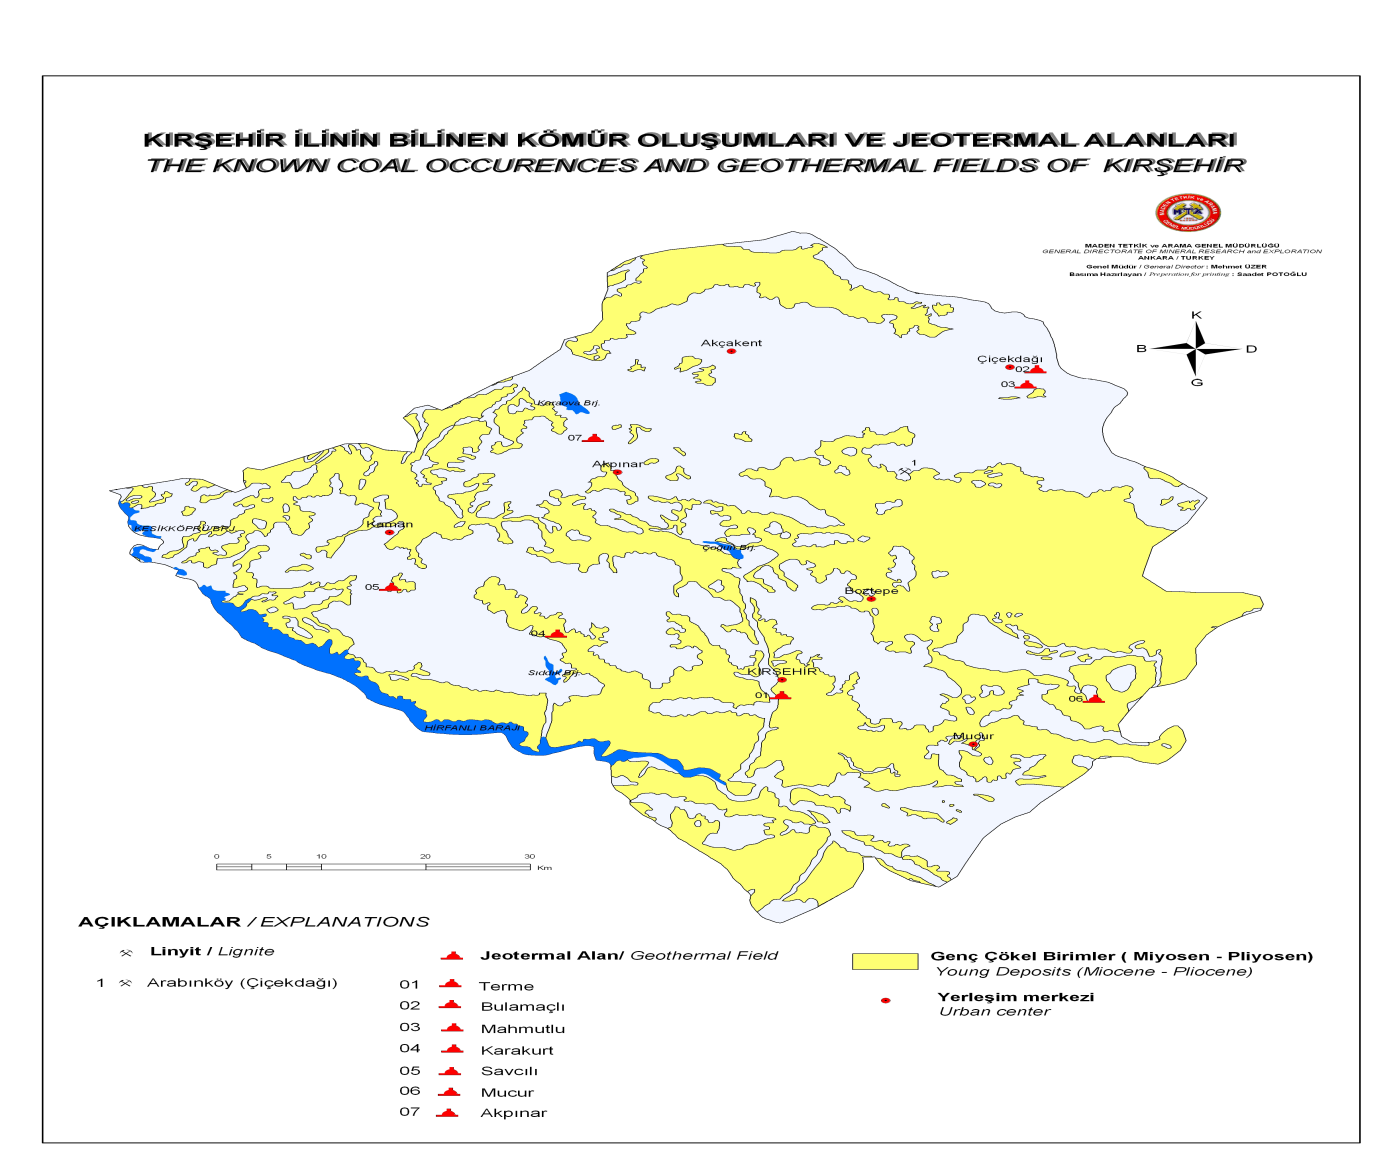 Source: MTA Terme Kaplıcası Kırşehir in merkez Kuşdilli mahallesi nde bulunmaktadır. Terme jeotermal sahası, Kırşehir ilinin en önemli jeotermal alanlarından birisidir.